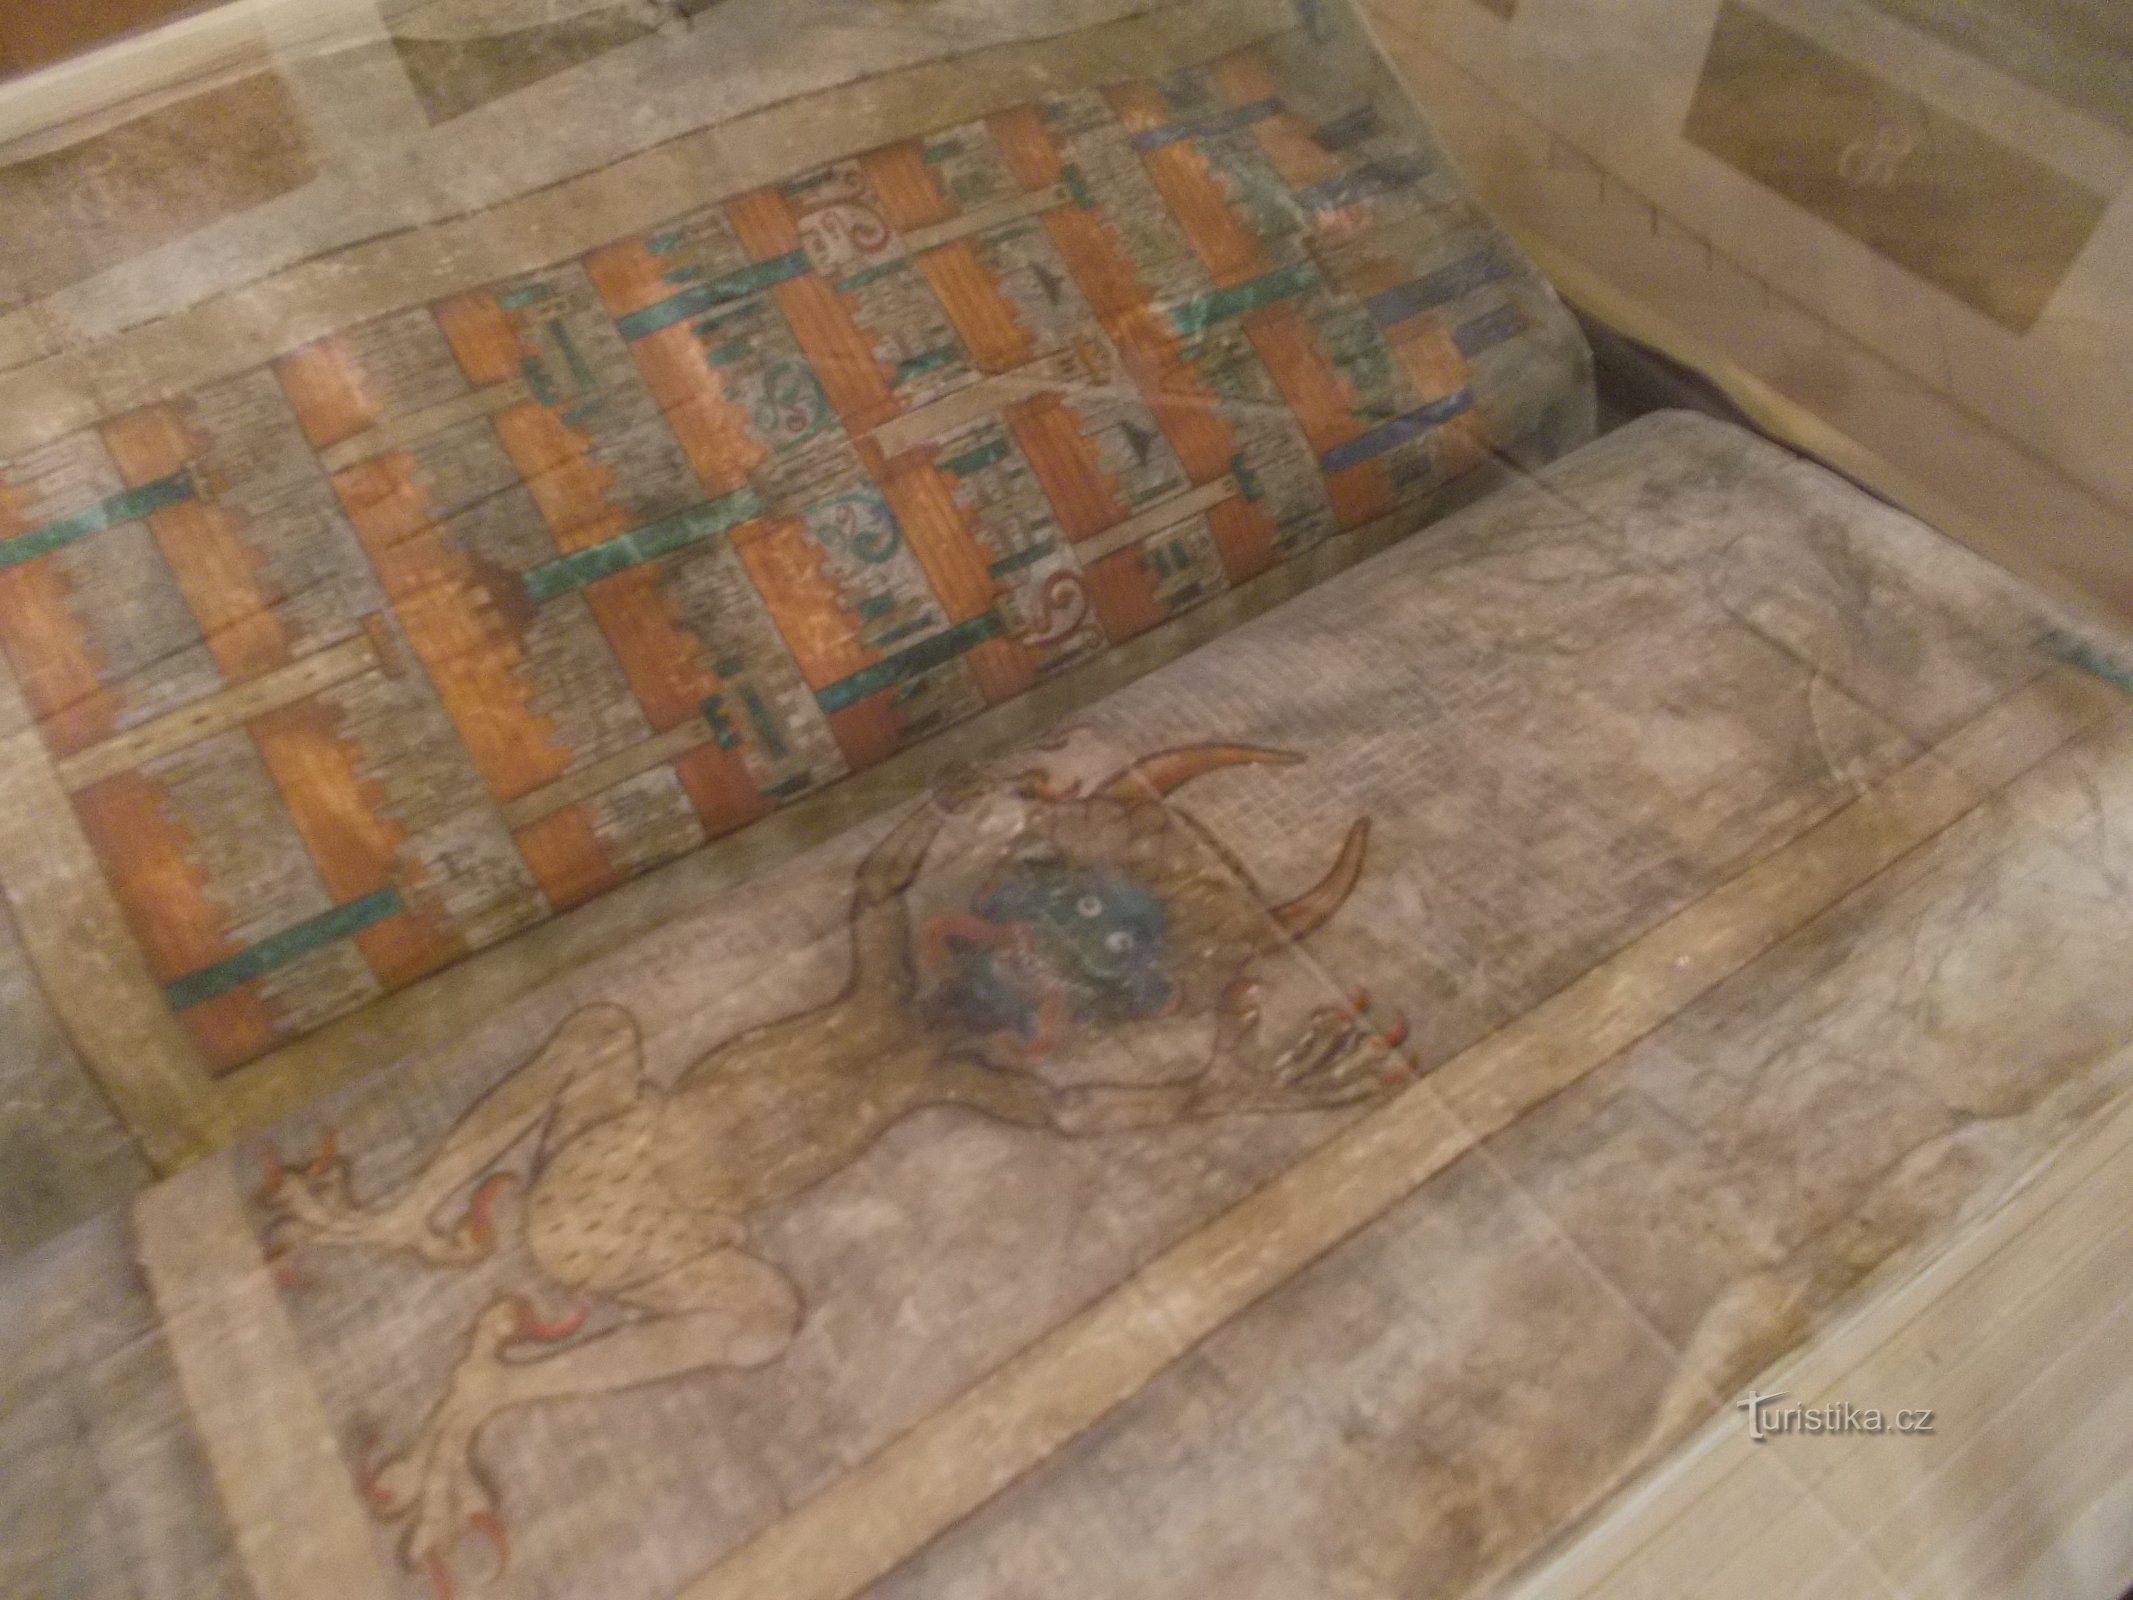 Codex gigas neboli Ďáblova bible